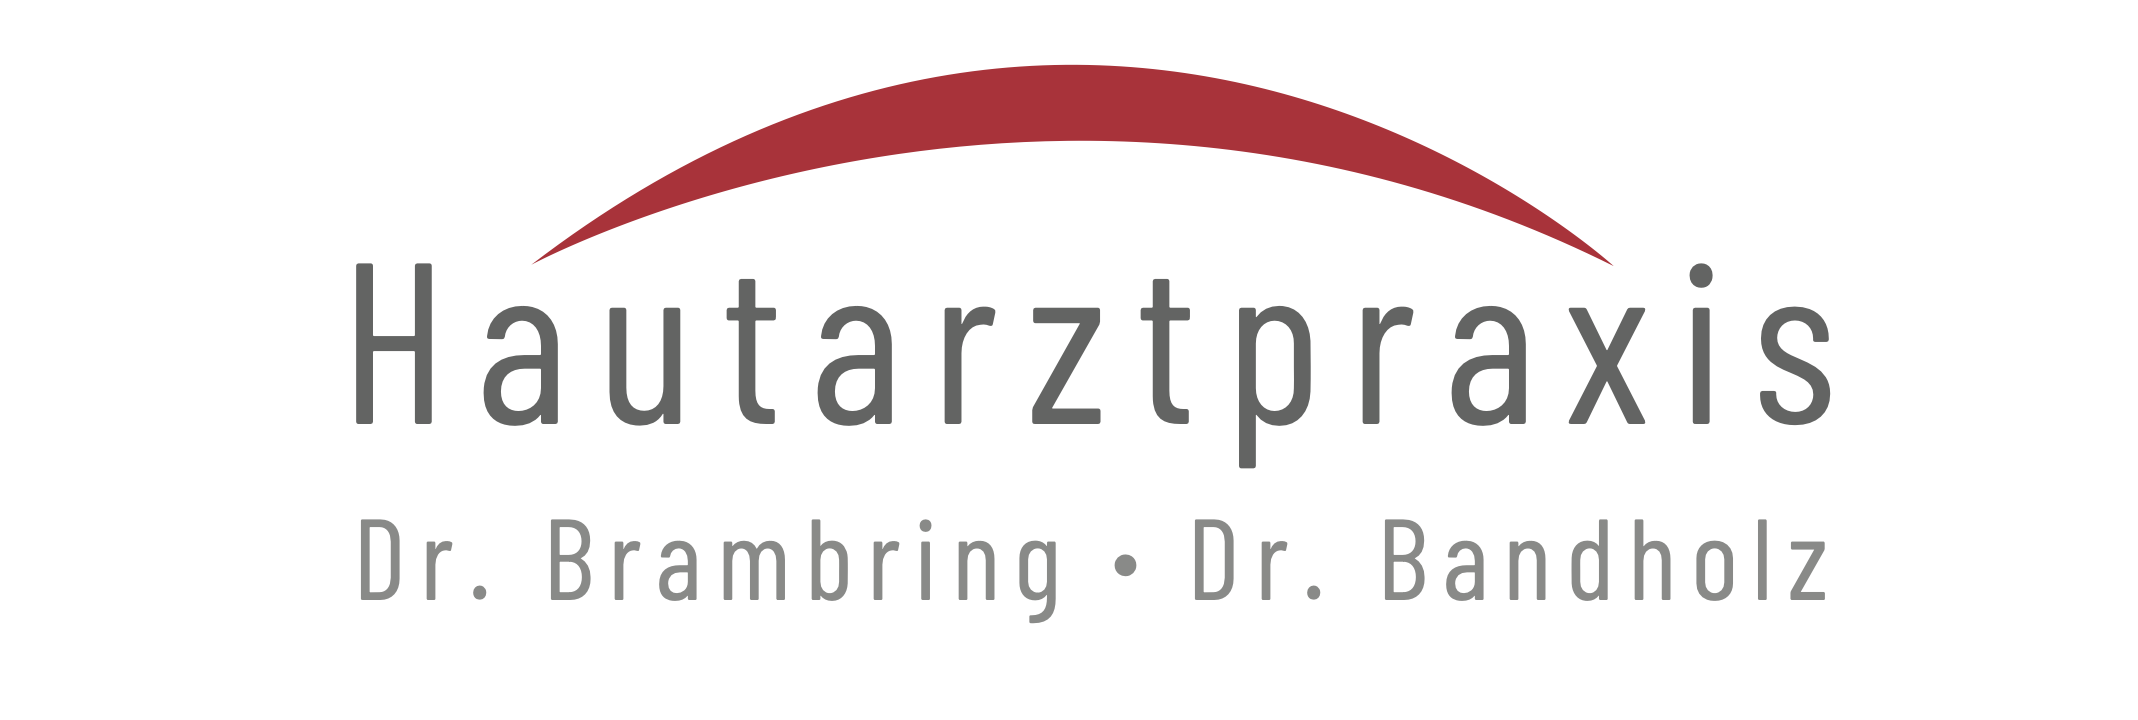 Hautarztpraxis Dr. Brambring Dr. Bandholz